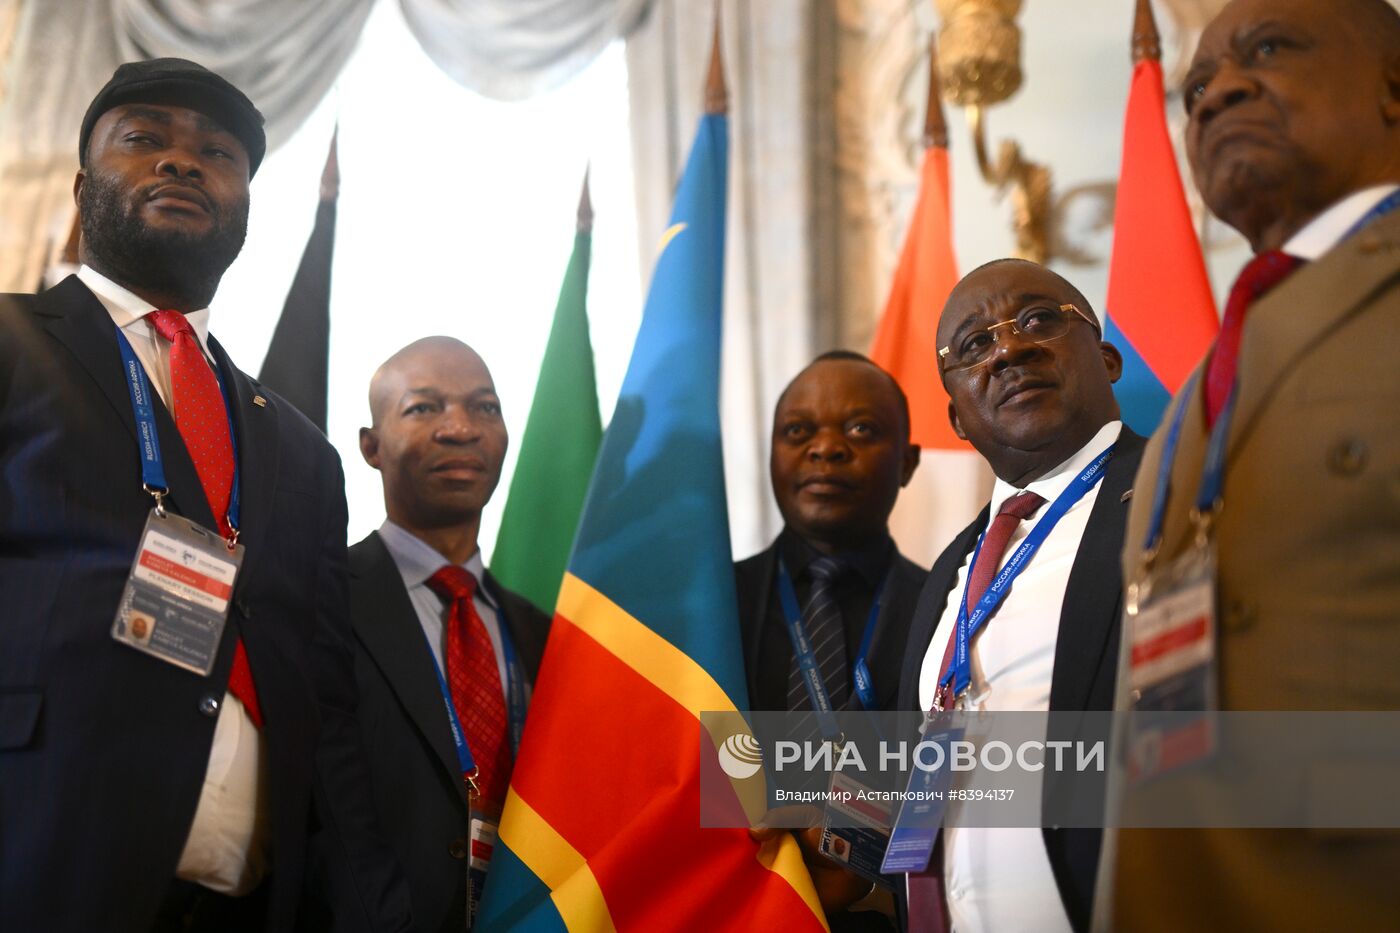 Международная парламентская конференция "Россия-Африка"